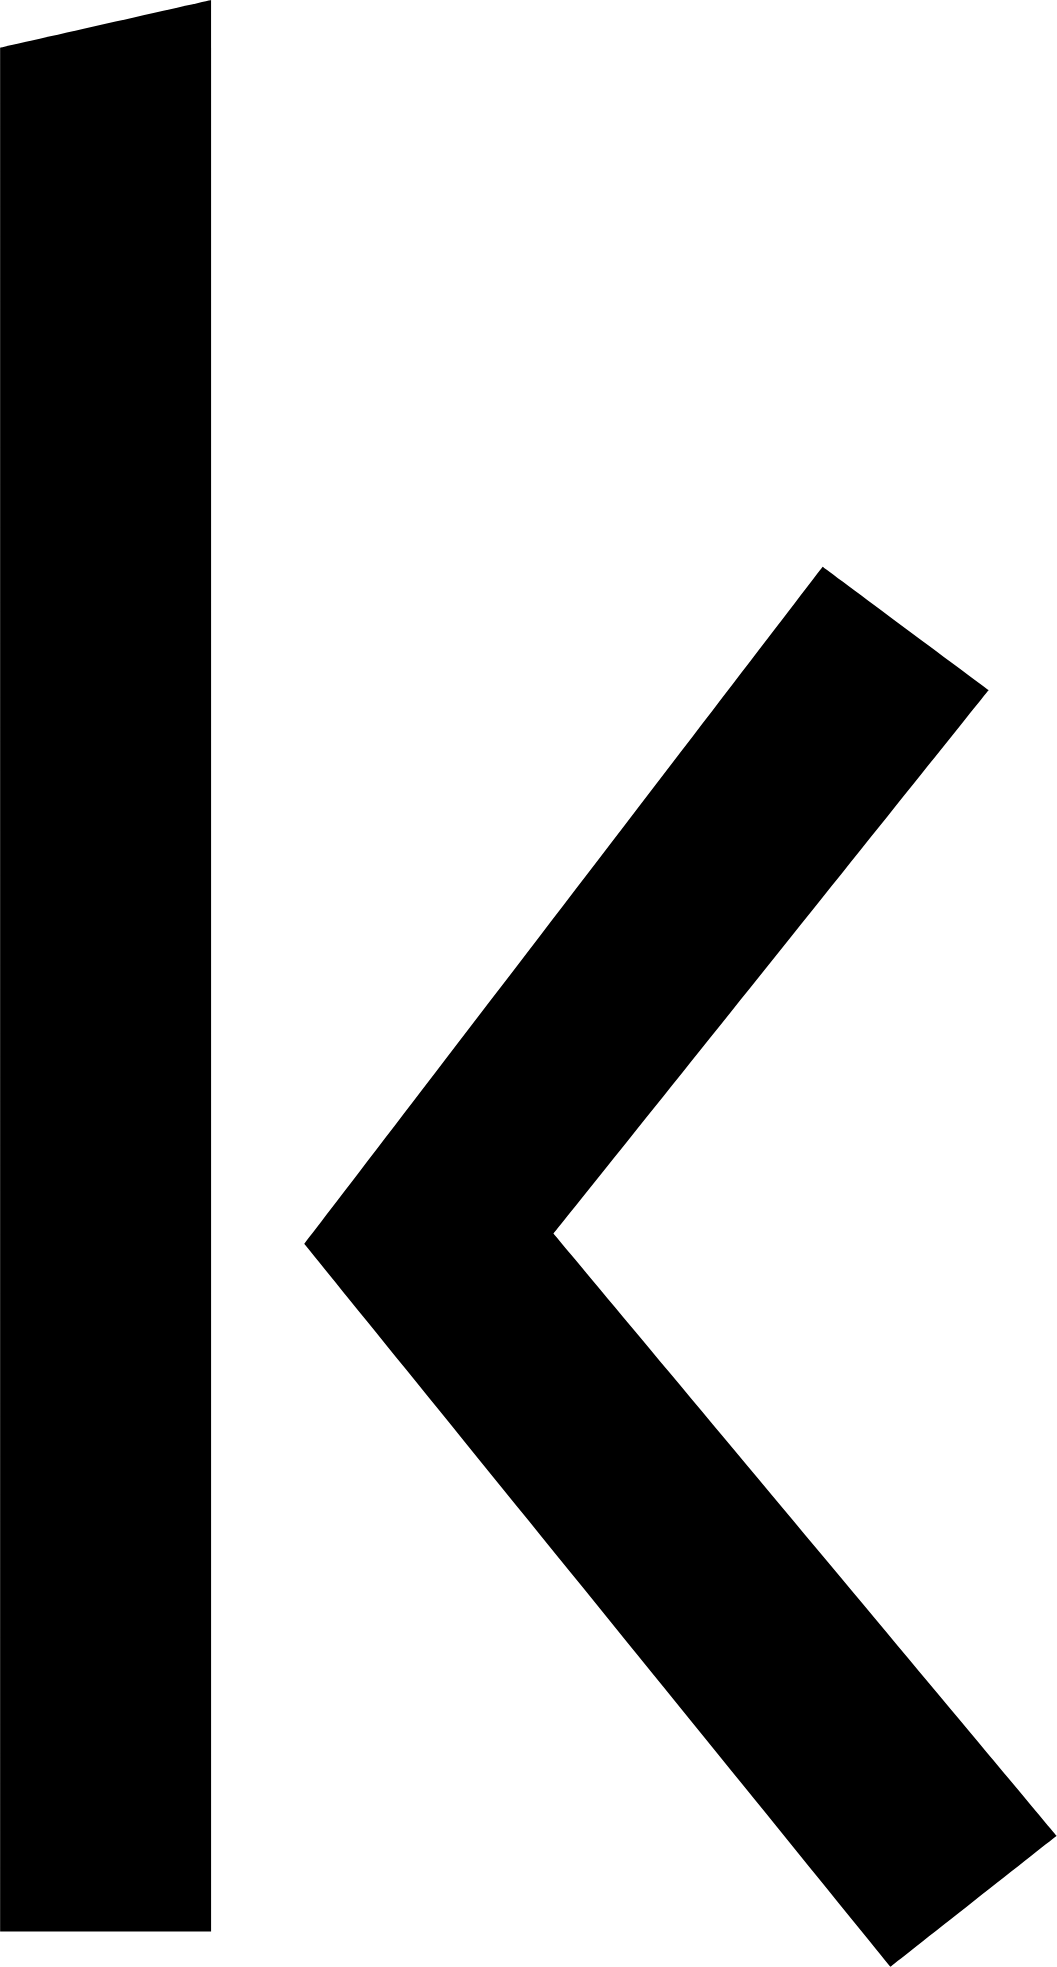 Kakao Pay logo (transparent PNG)